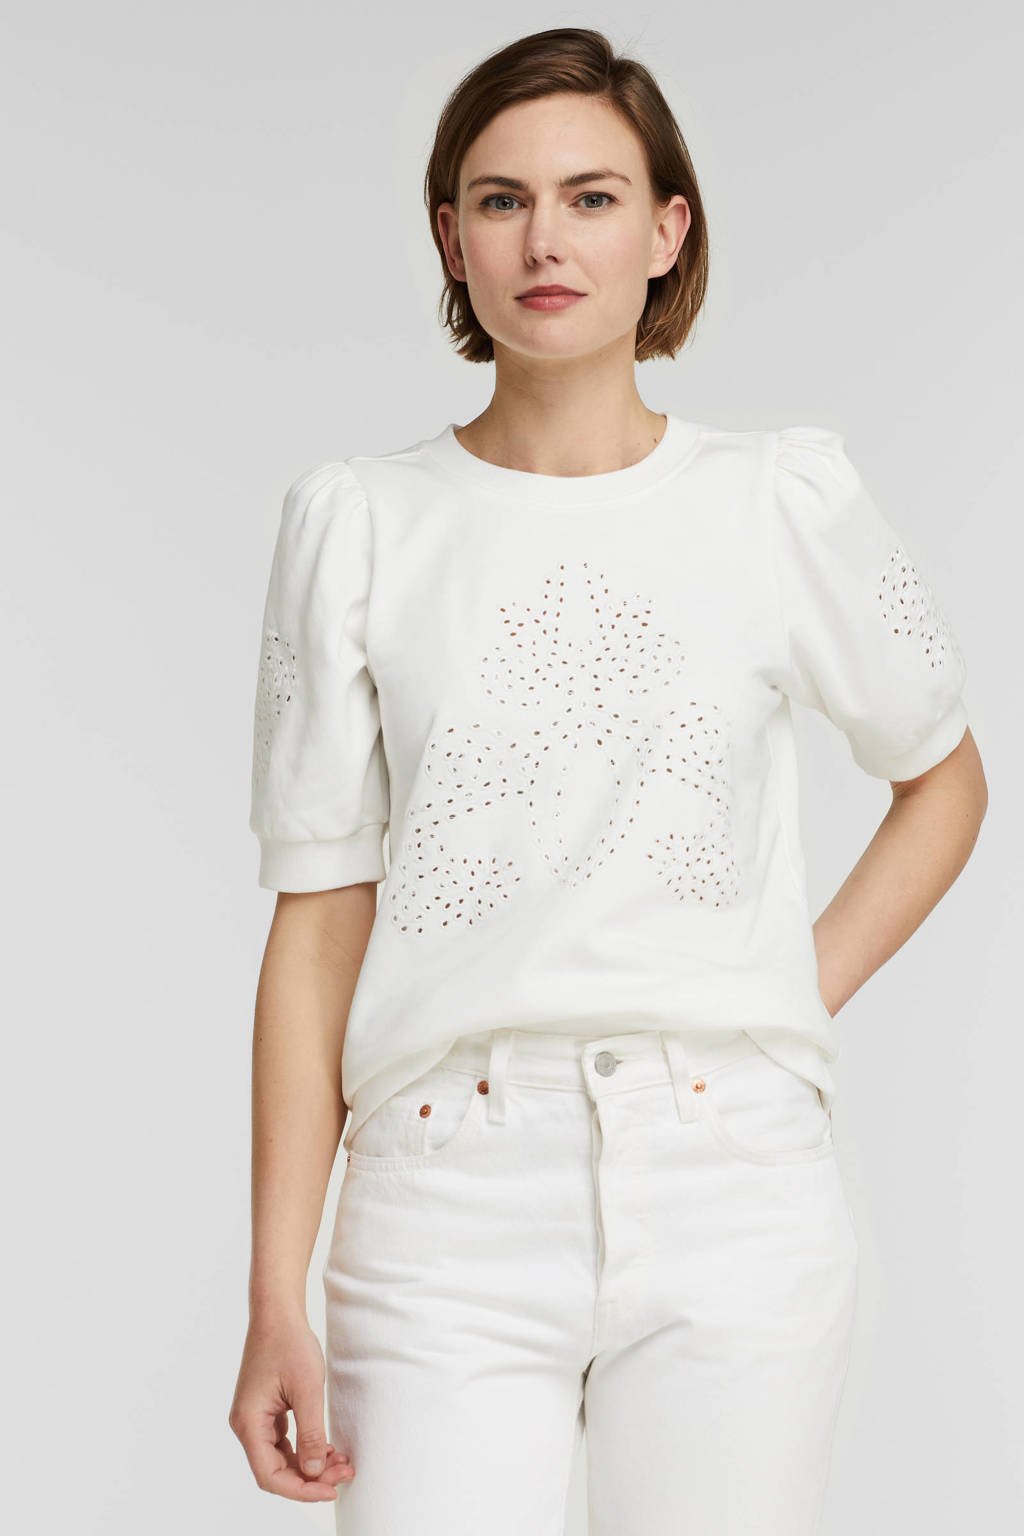 Witte dames Esqualo top Sweater embroidery s slve detail van katoen met korte mouwen en ronde hals